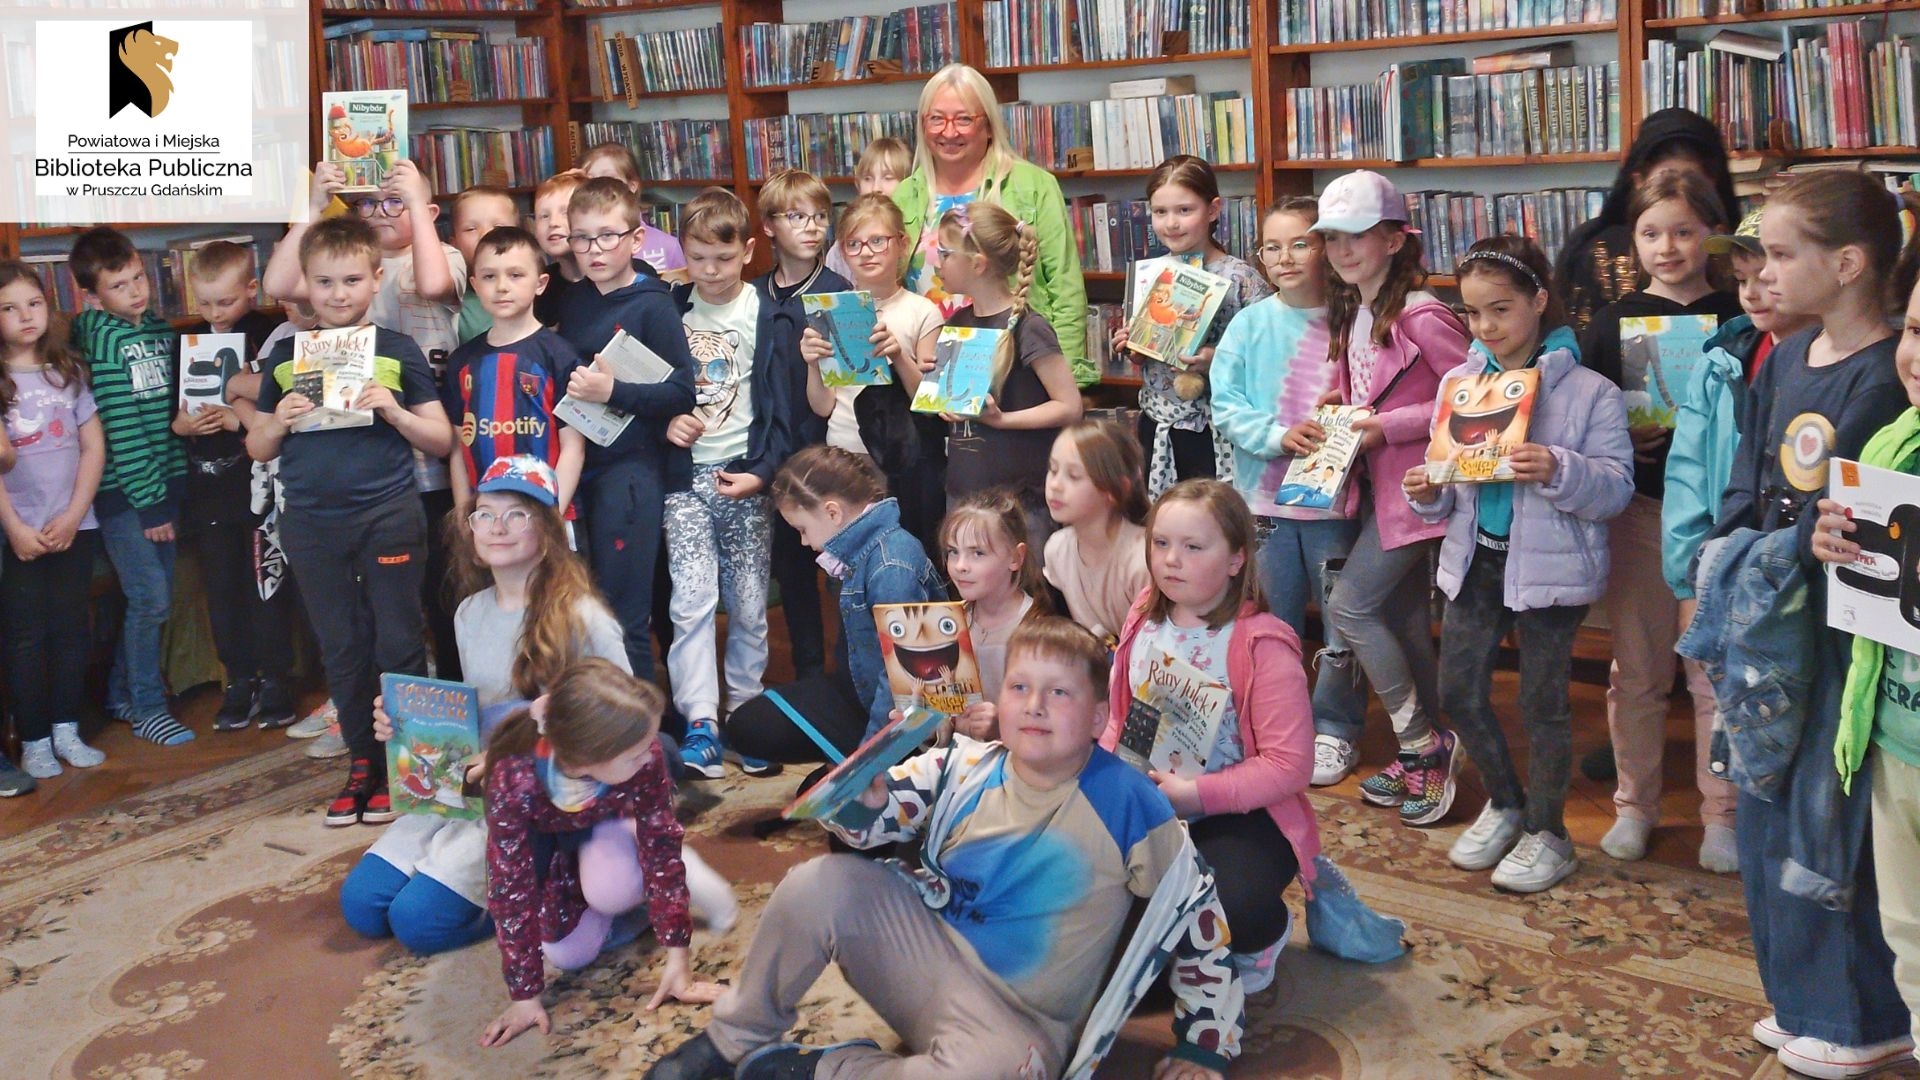 Pisarka Agnieszka Frączek pozuje do zdjęcia z dziećmi obecnymi podczas spotkania autorskiego w bibliotece. Niektóre dzieci trzymają w rękach książkę Frączek.